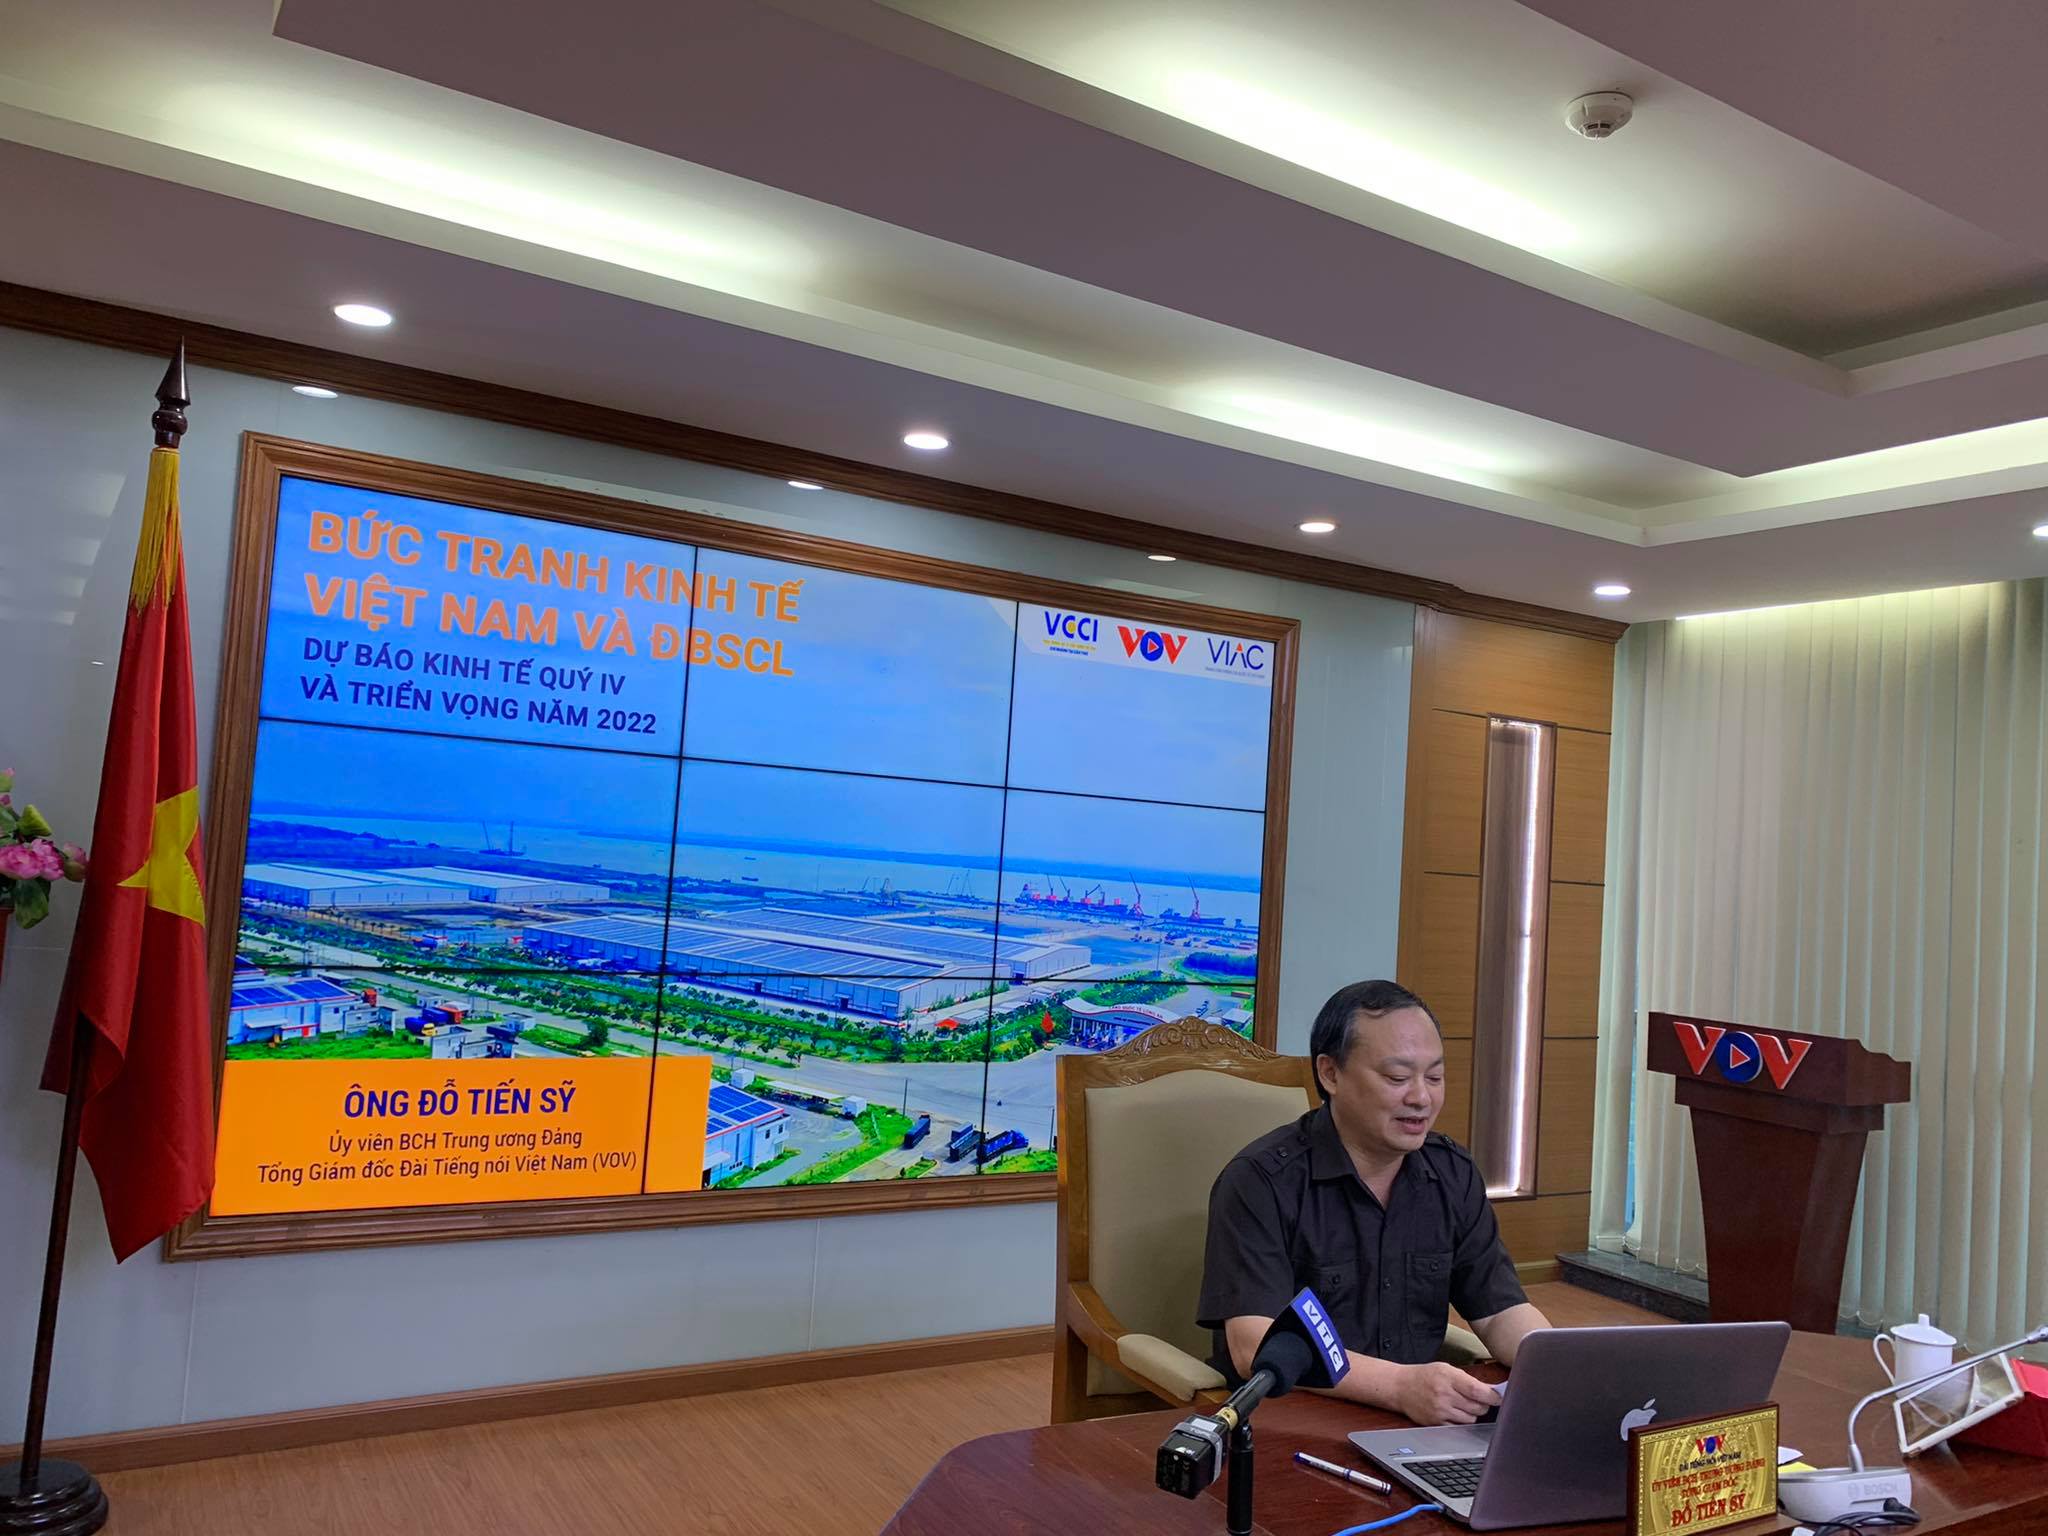 Hội thảo “Bức tranh kinh tế và Đồng bằng sông Cửu Long: Dự báo kinh tế quý IV và triển vọng năm 2022”